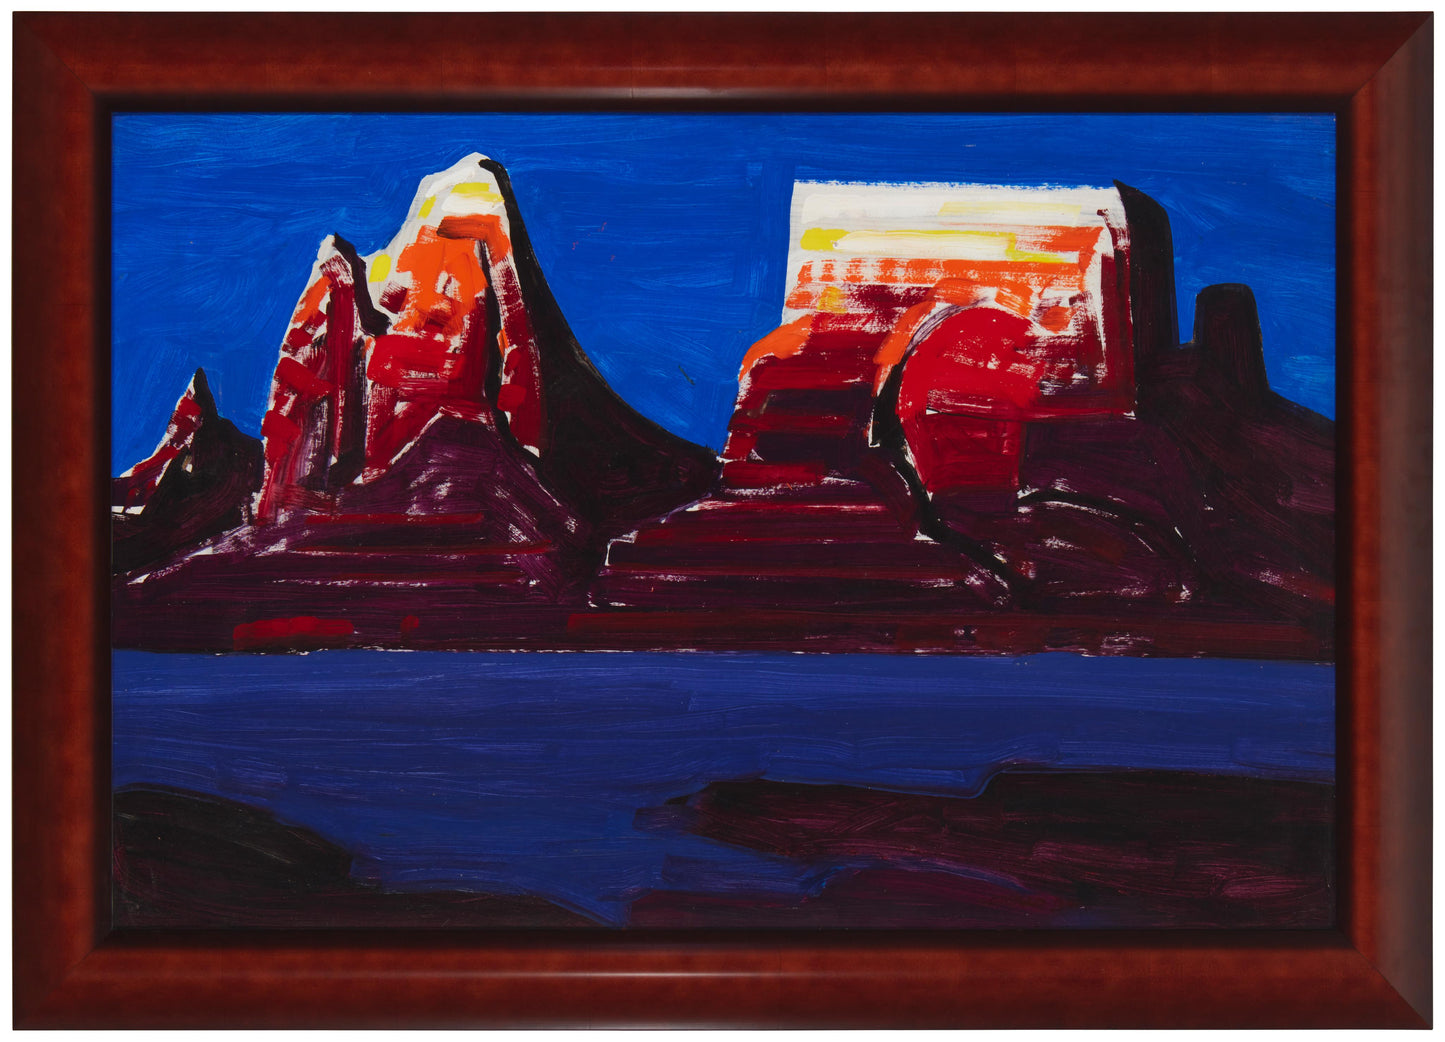 Conrad Buff - Butte Landscape 24" x 36"